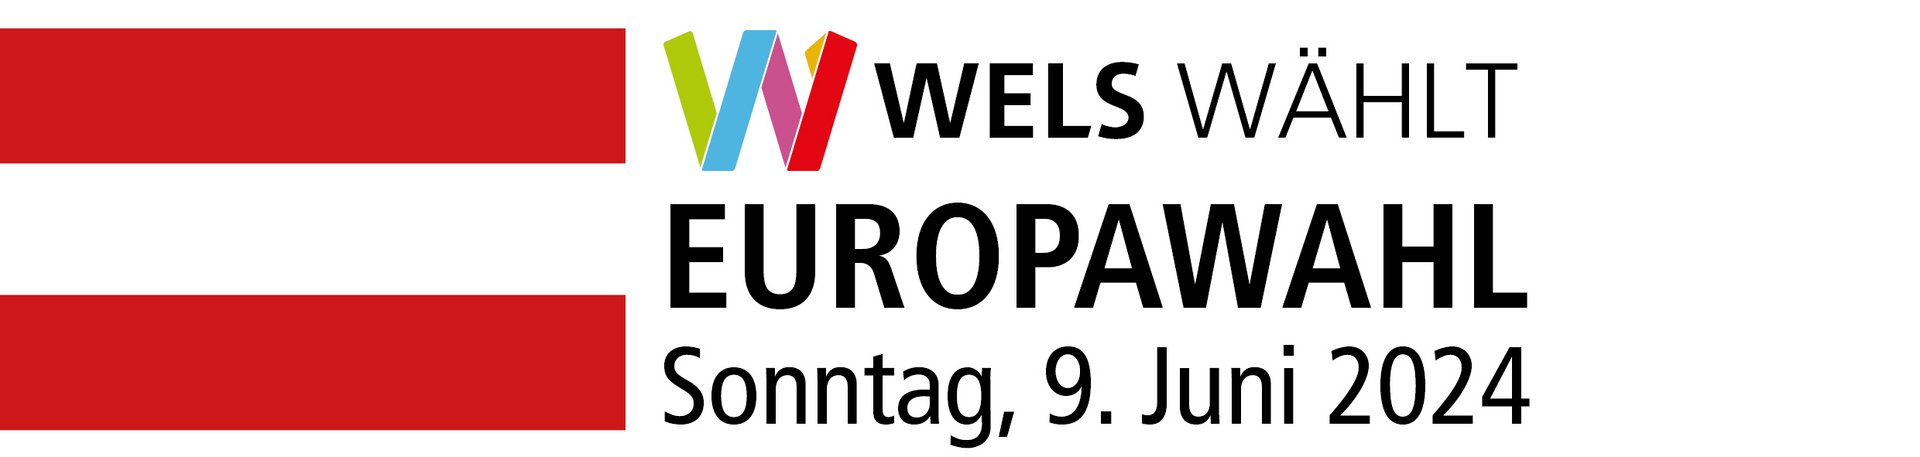 Banner zur Europawahl am Sonntag, 9. Juni 2024